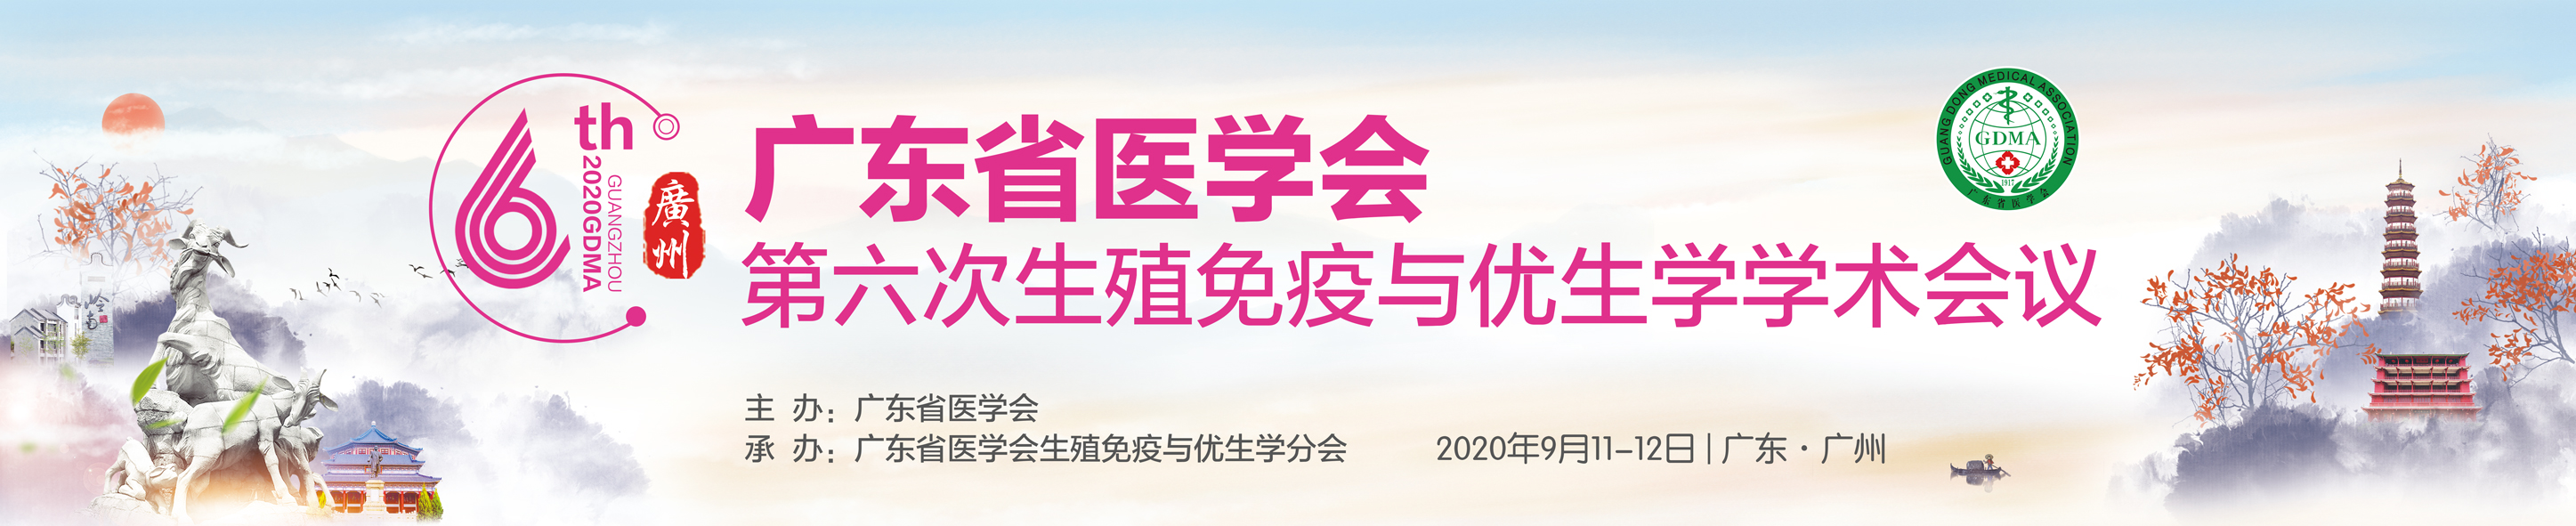 广东省医学会第六次生殖免疫与优生学学术会议暨生殖免疫新技术与不孕不育培训班